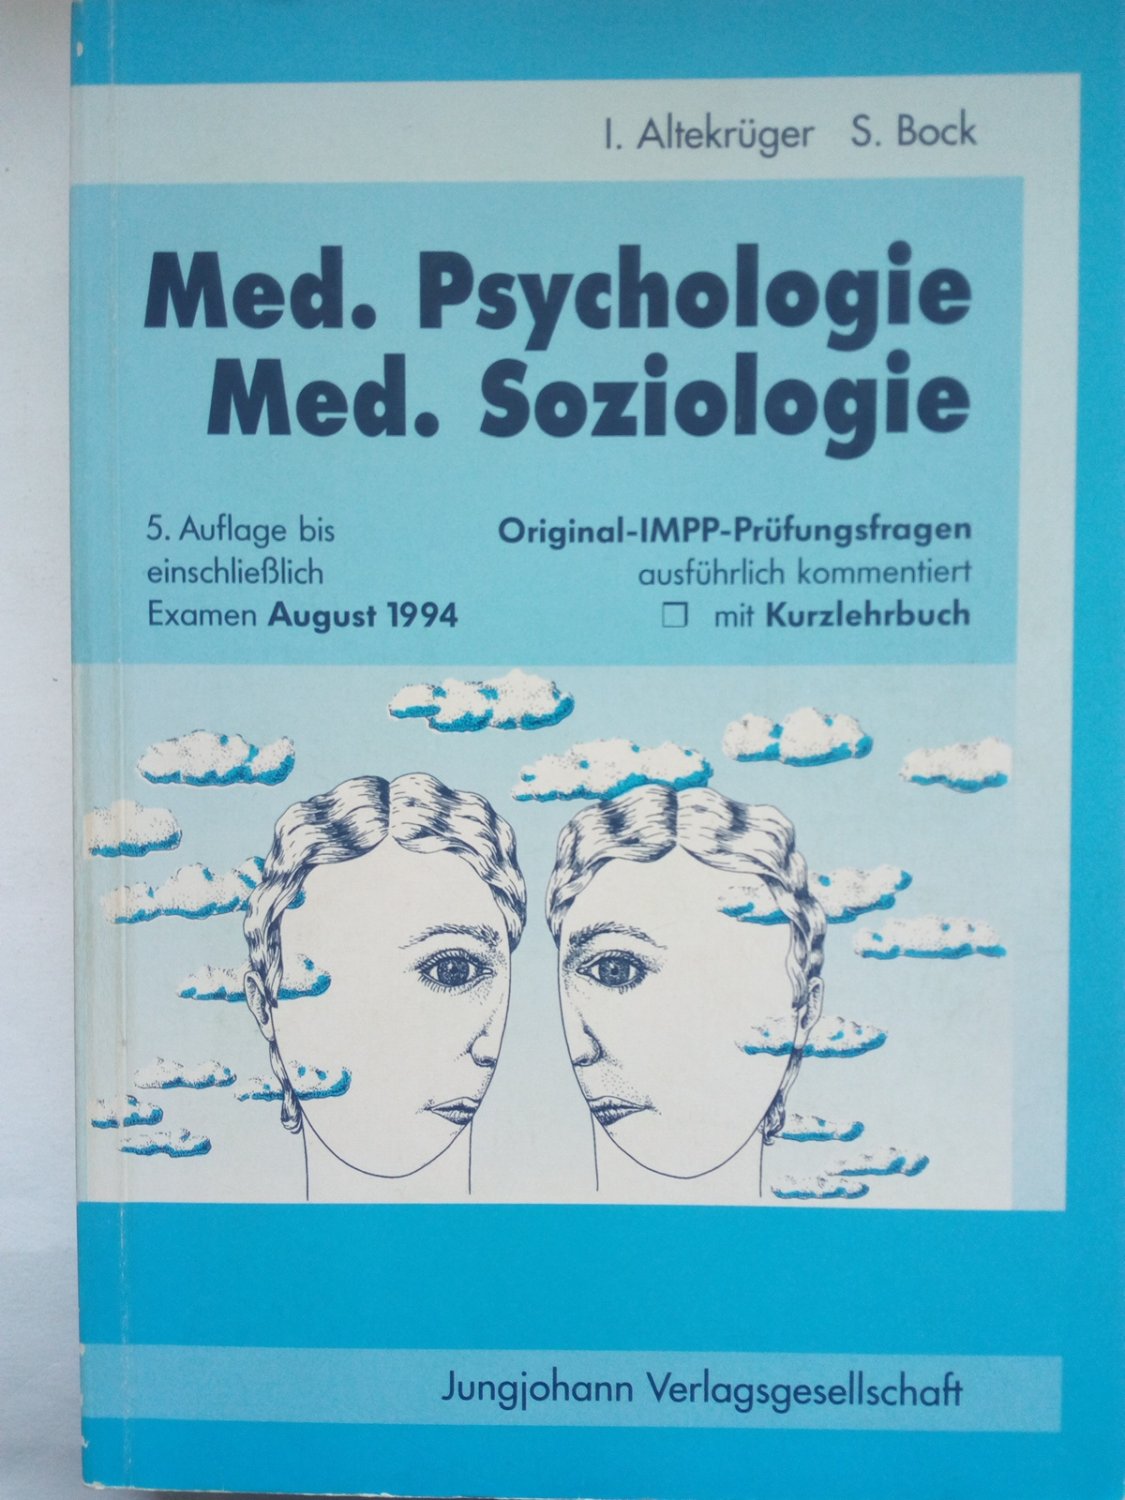 Medizinische Psychologie und Soziologie : Original-IMPP-Prüfungsfragen mit ausführlichen Kommentaren und Kurzlehrbuch - Altekrüger, Imke; Bock, Sonja